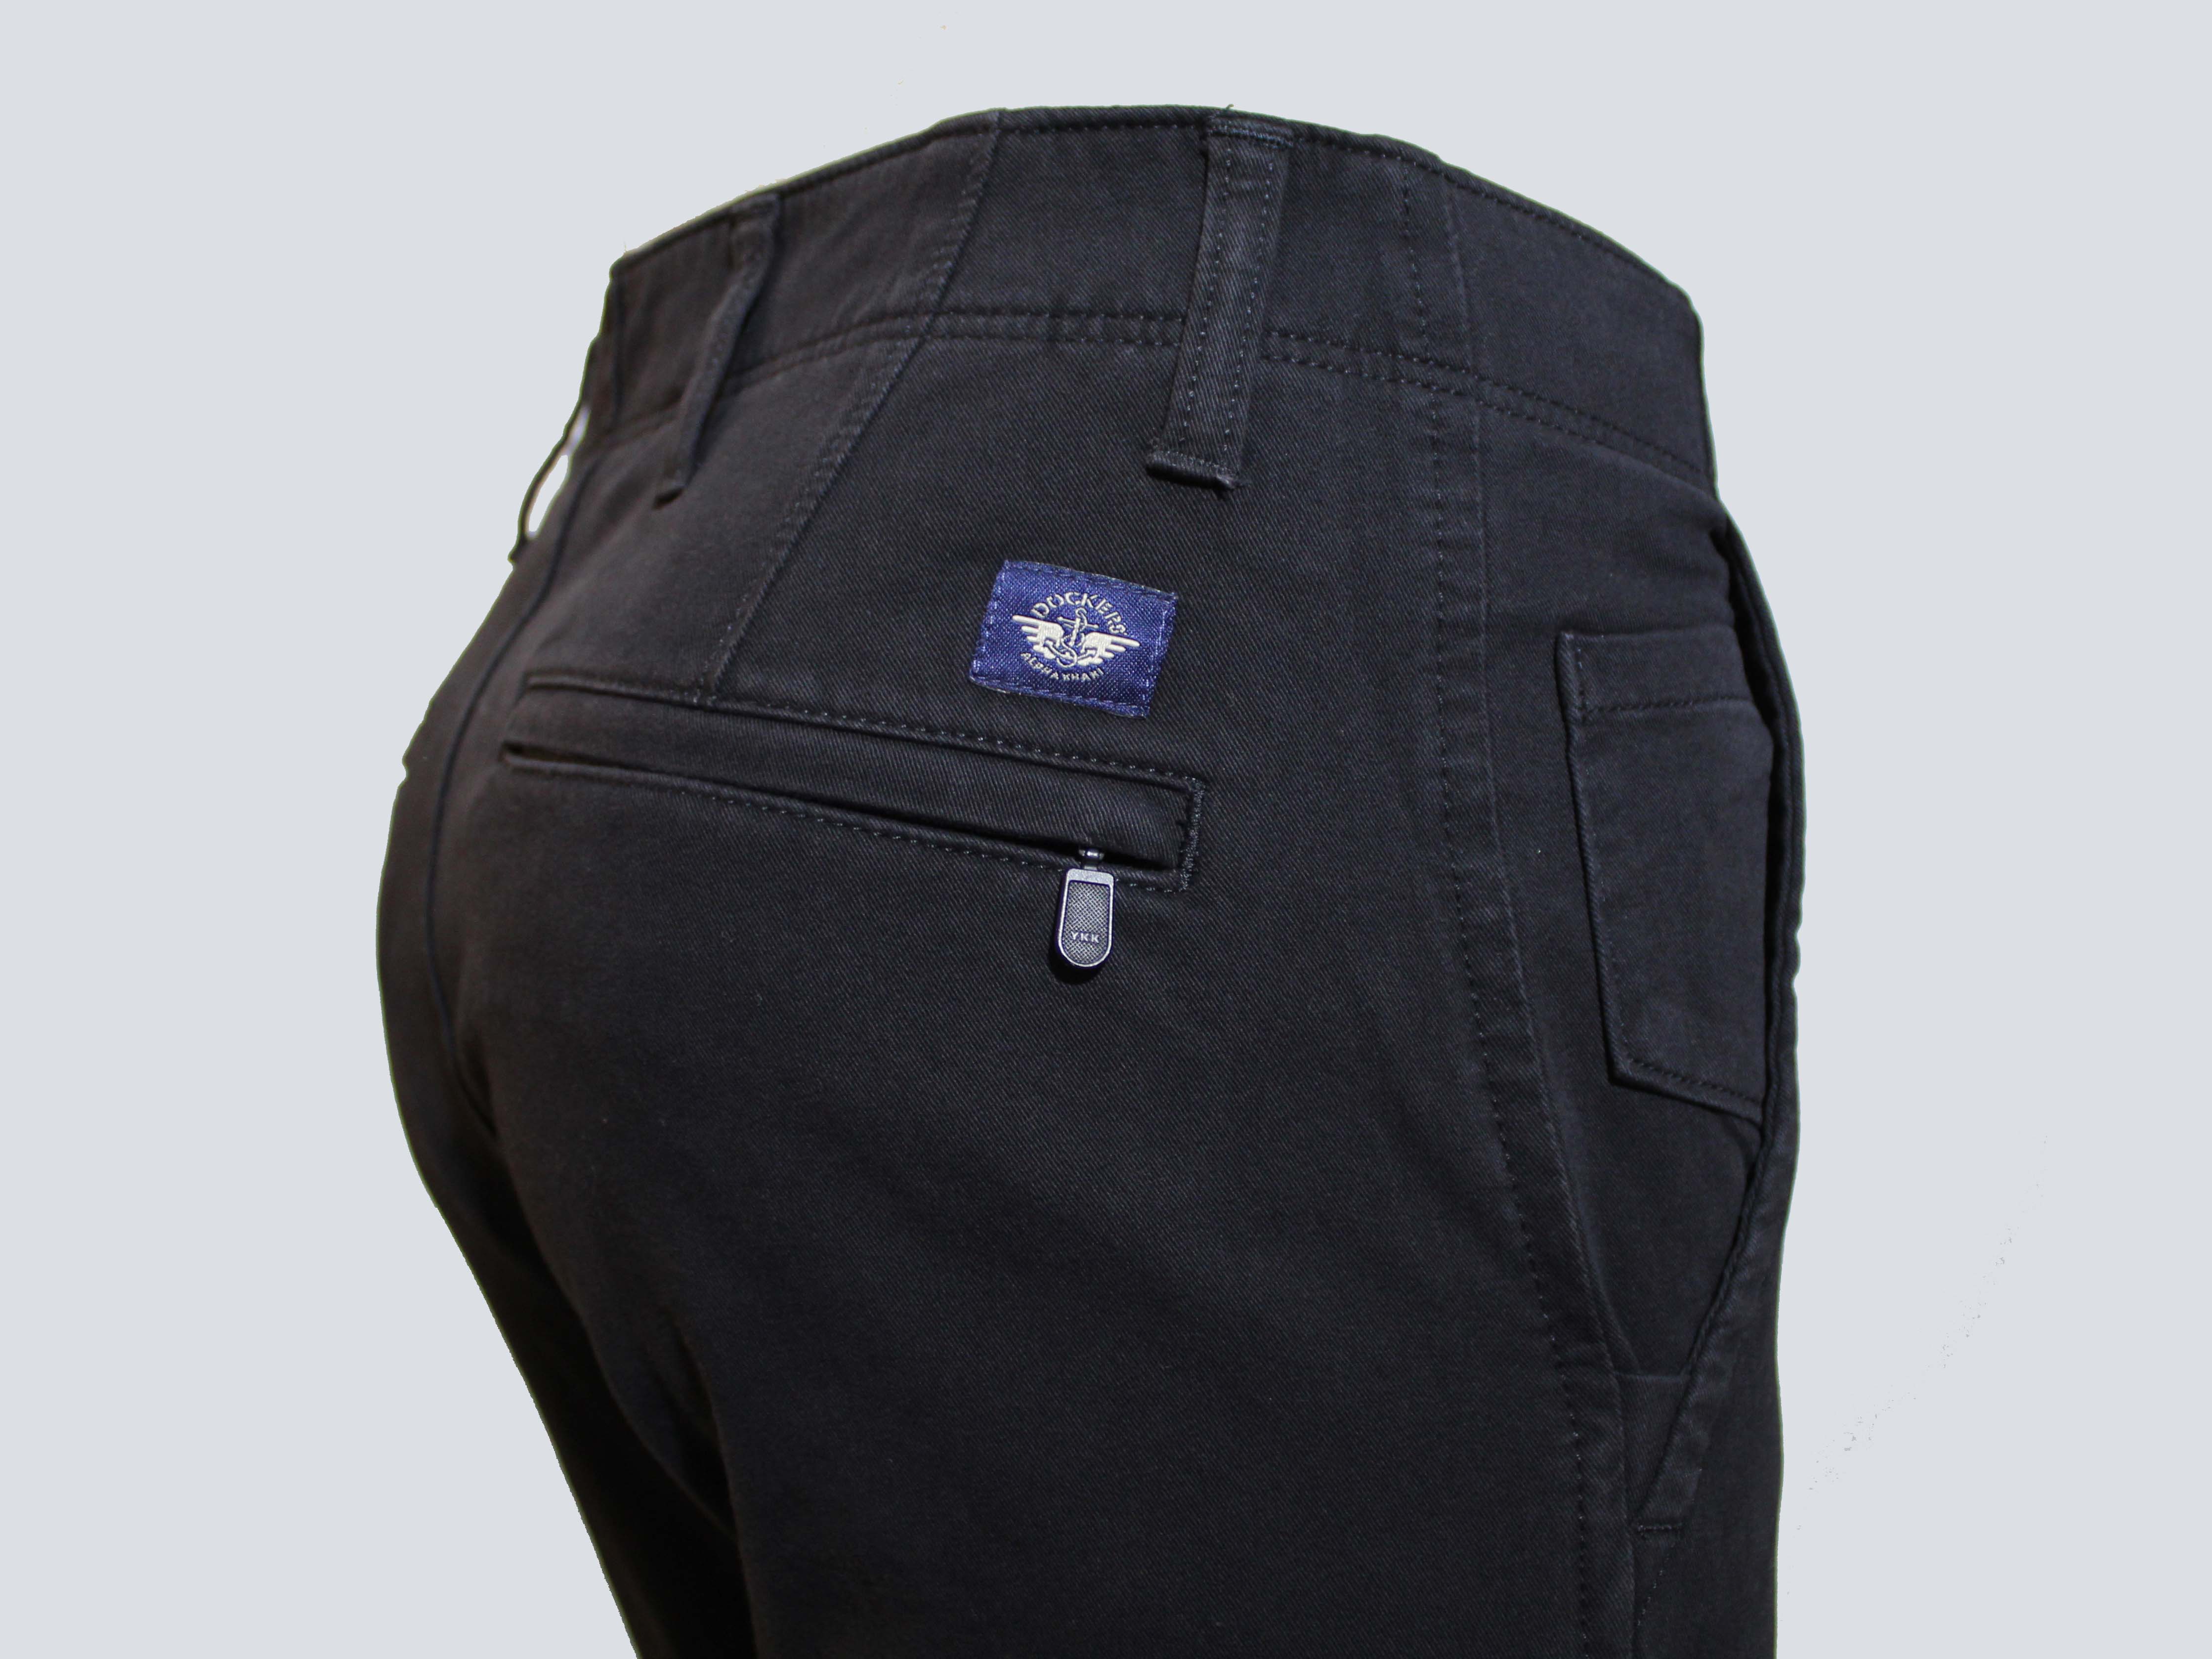 Pantalons d'home Dockers Alpha Khaki 360 skinny (pitillo) 55775-0018 color negre - 3 - La Casa Dels Pantalons